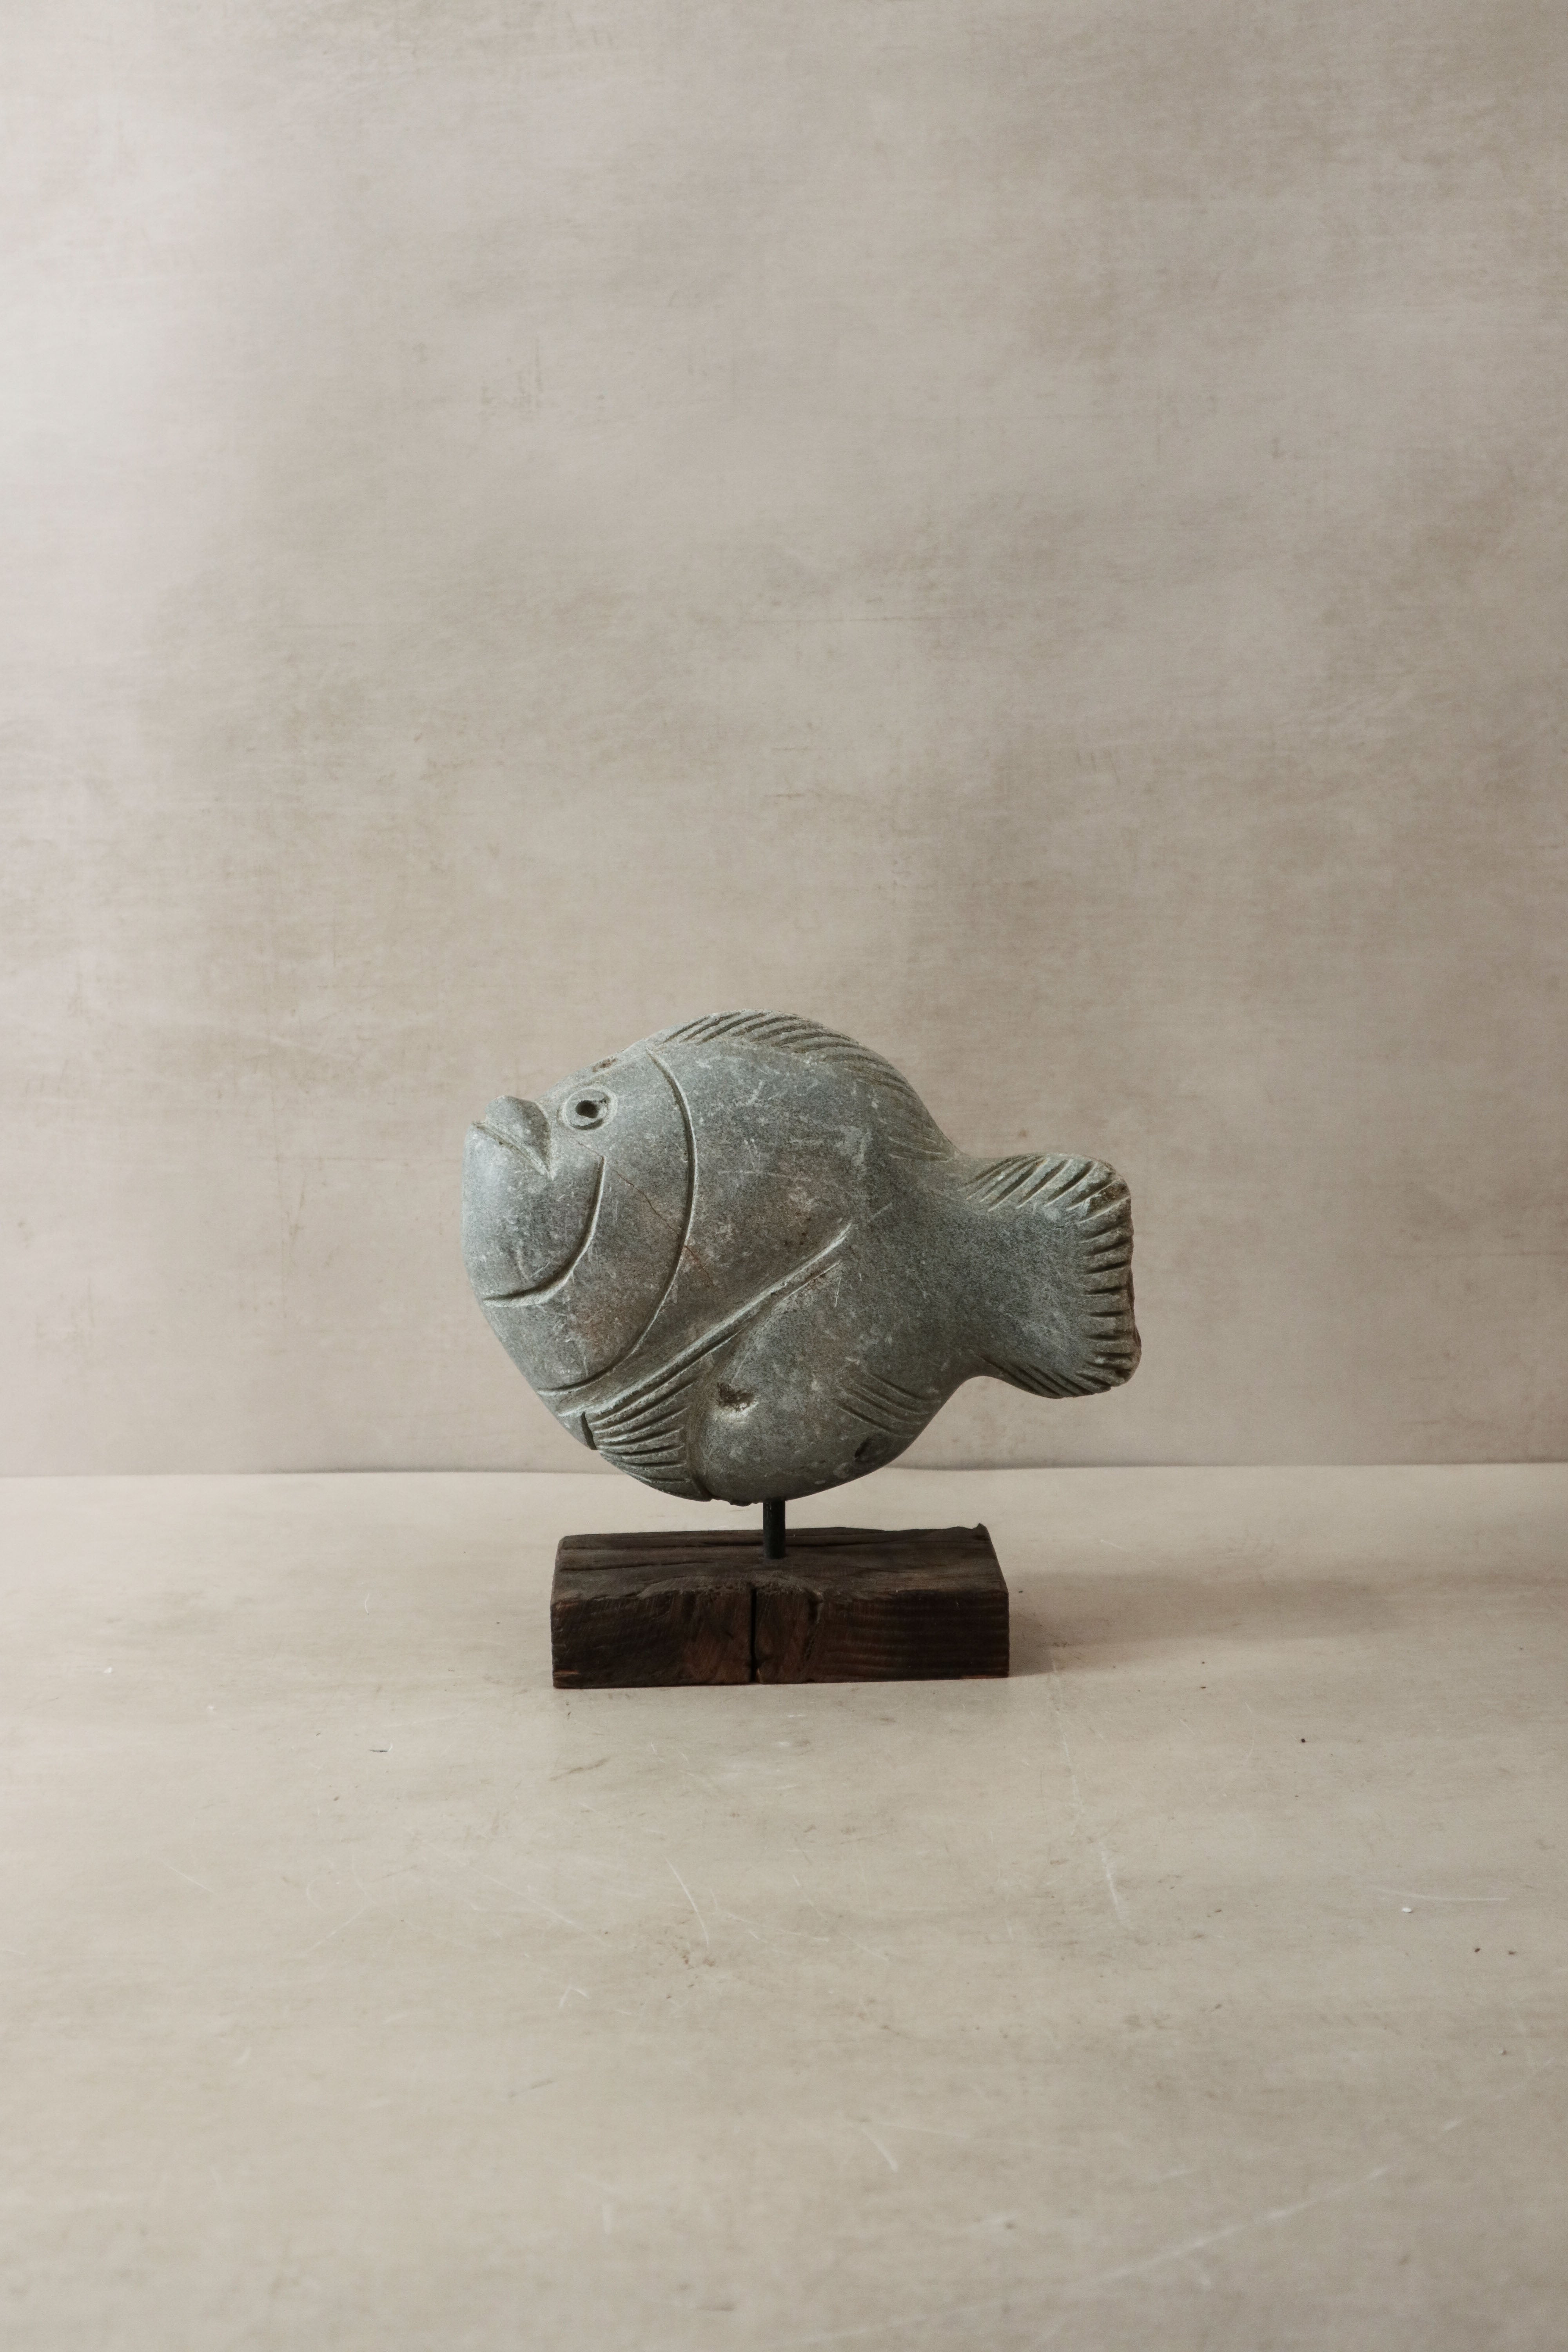 botanicalboysuk Stone Fish Sculpture - Zimbabwe - 31.6